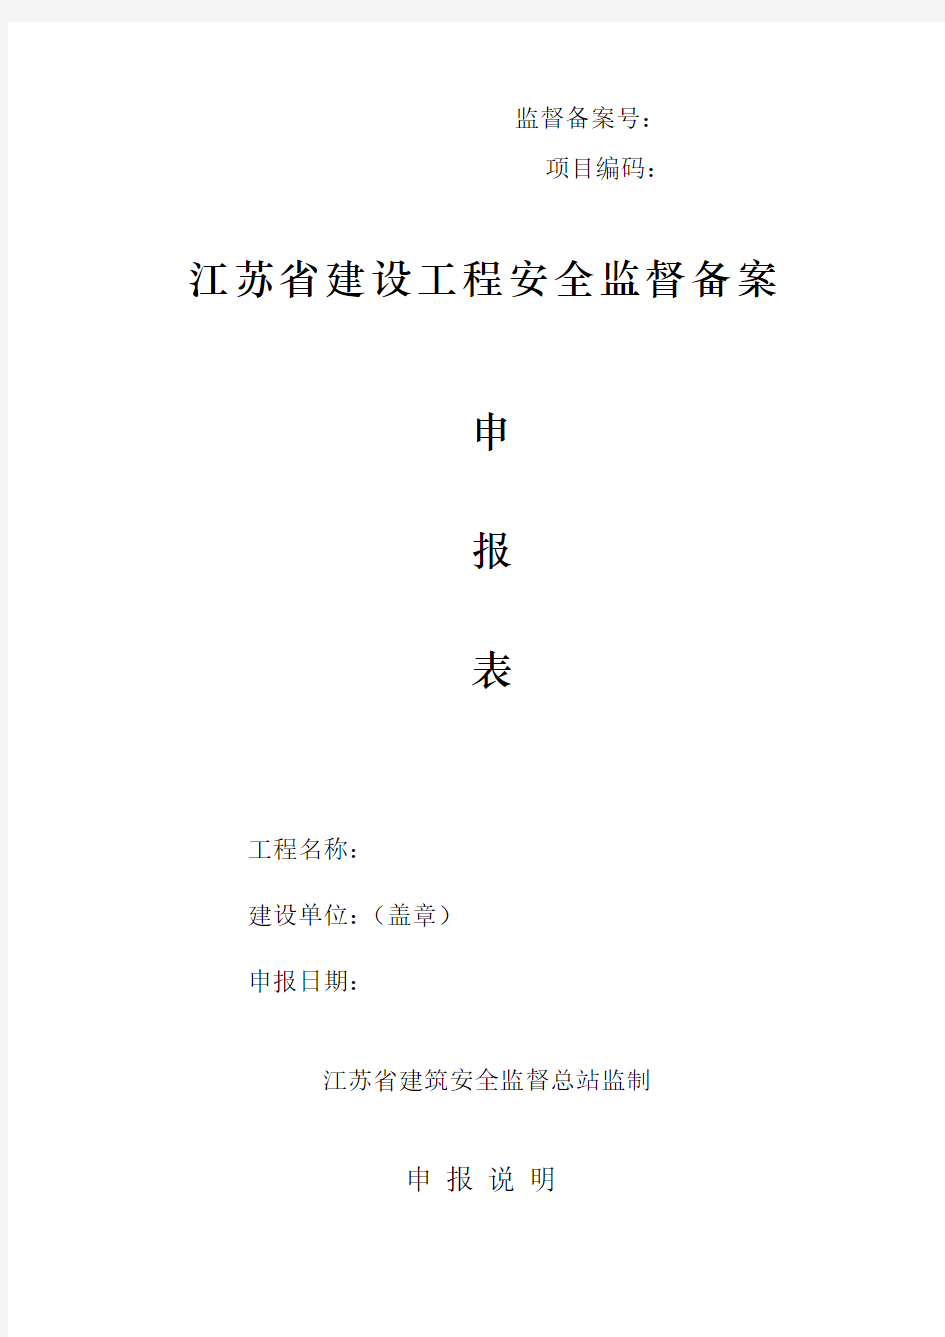 江苏省建设工程安全监督备案申请表(最新版附全套资料)